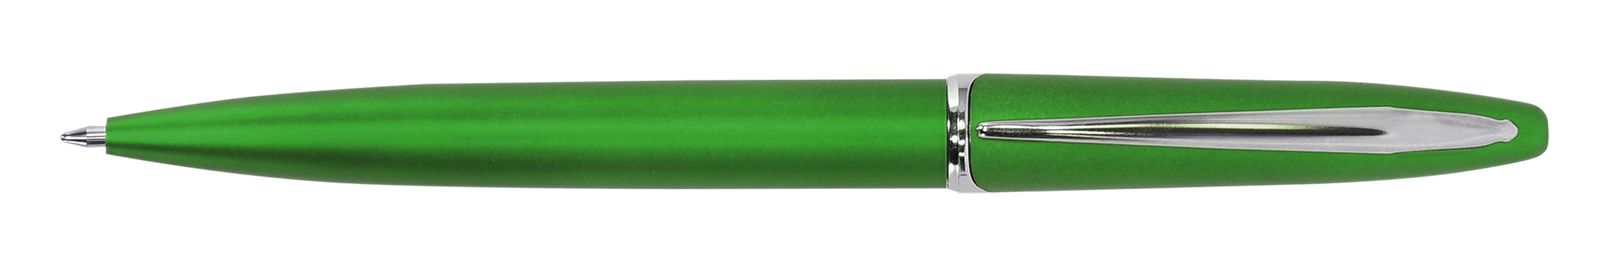 Ручка для логотипа шариковая автоматическая INFORMAT INSPIRATION 0,7 мм, синяя, зеленый корпус оптом